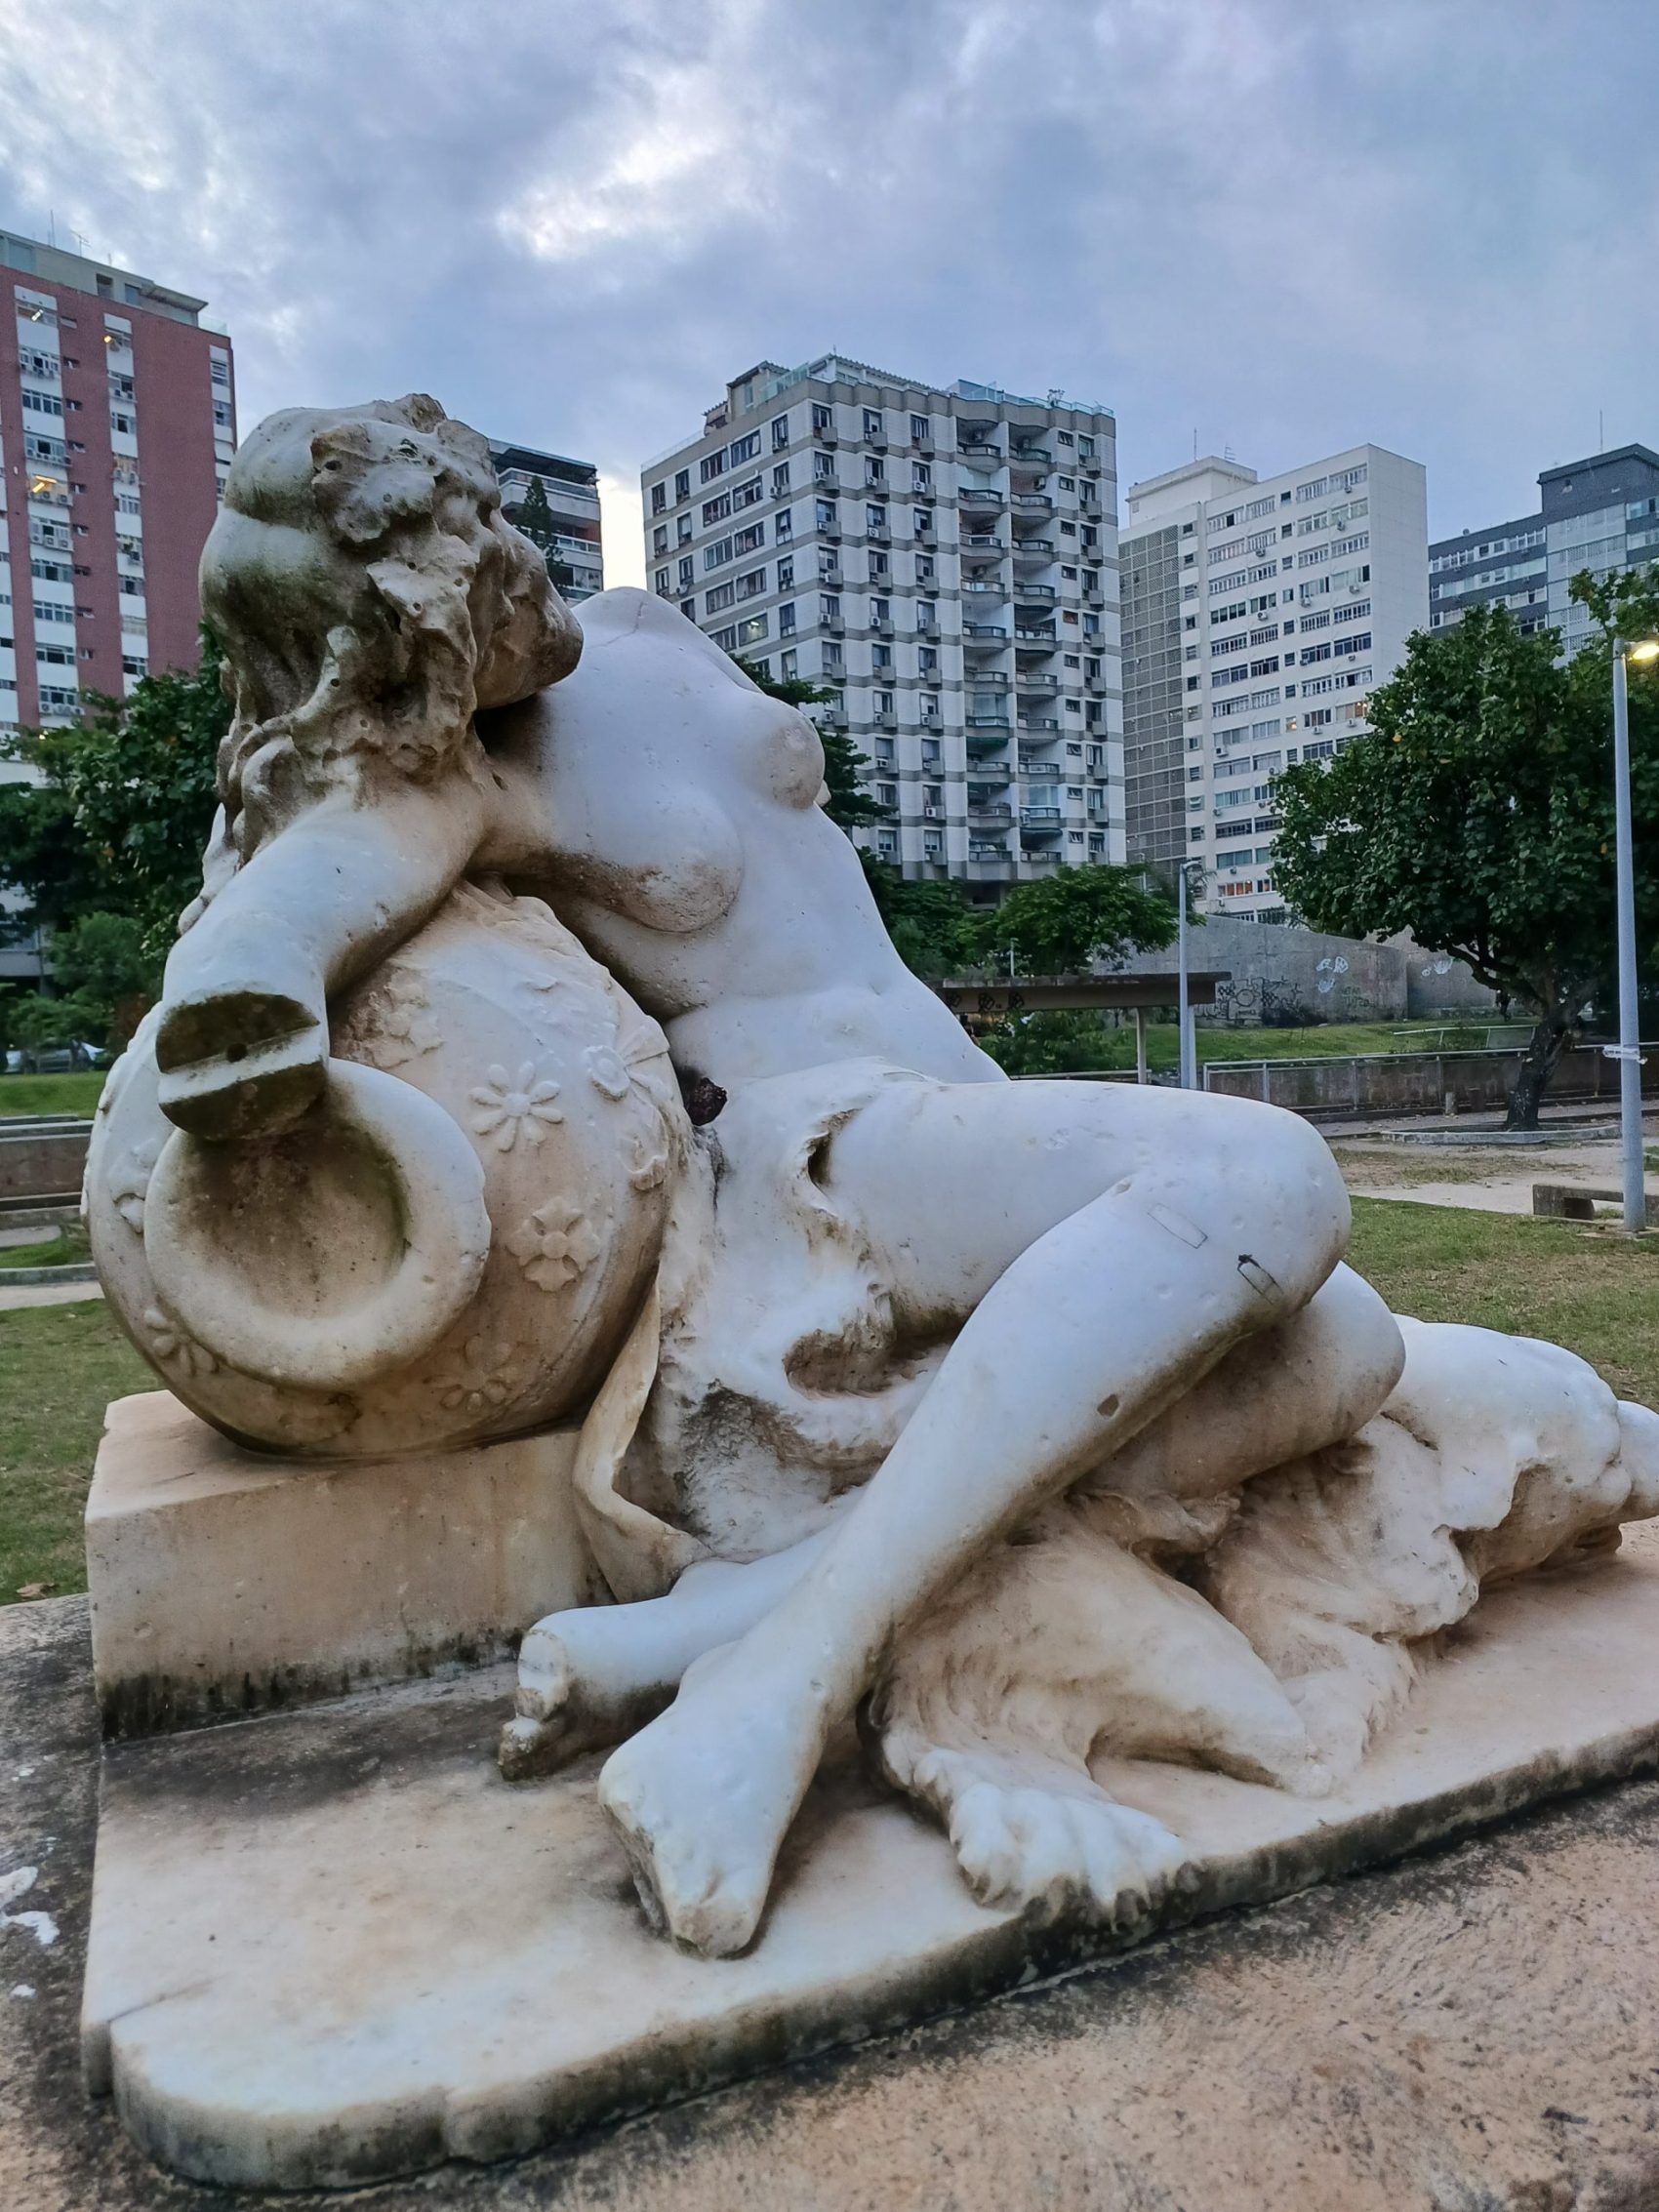 Uma das muitas estátuas quebradas e abandonadas no parque. Foto Beatriz Jaguaribe